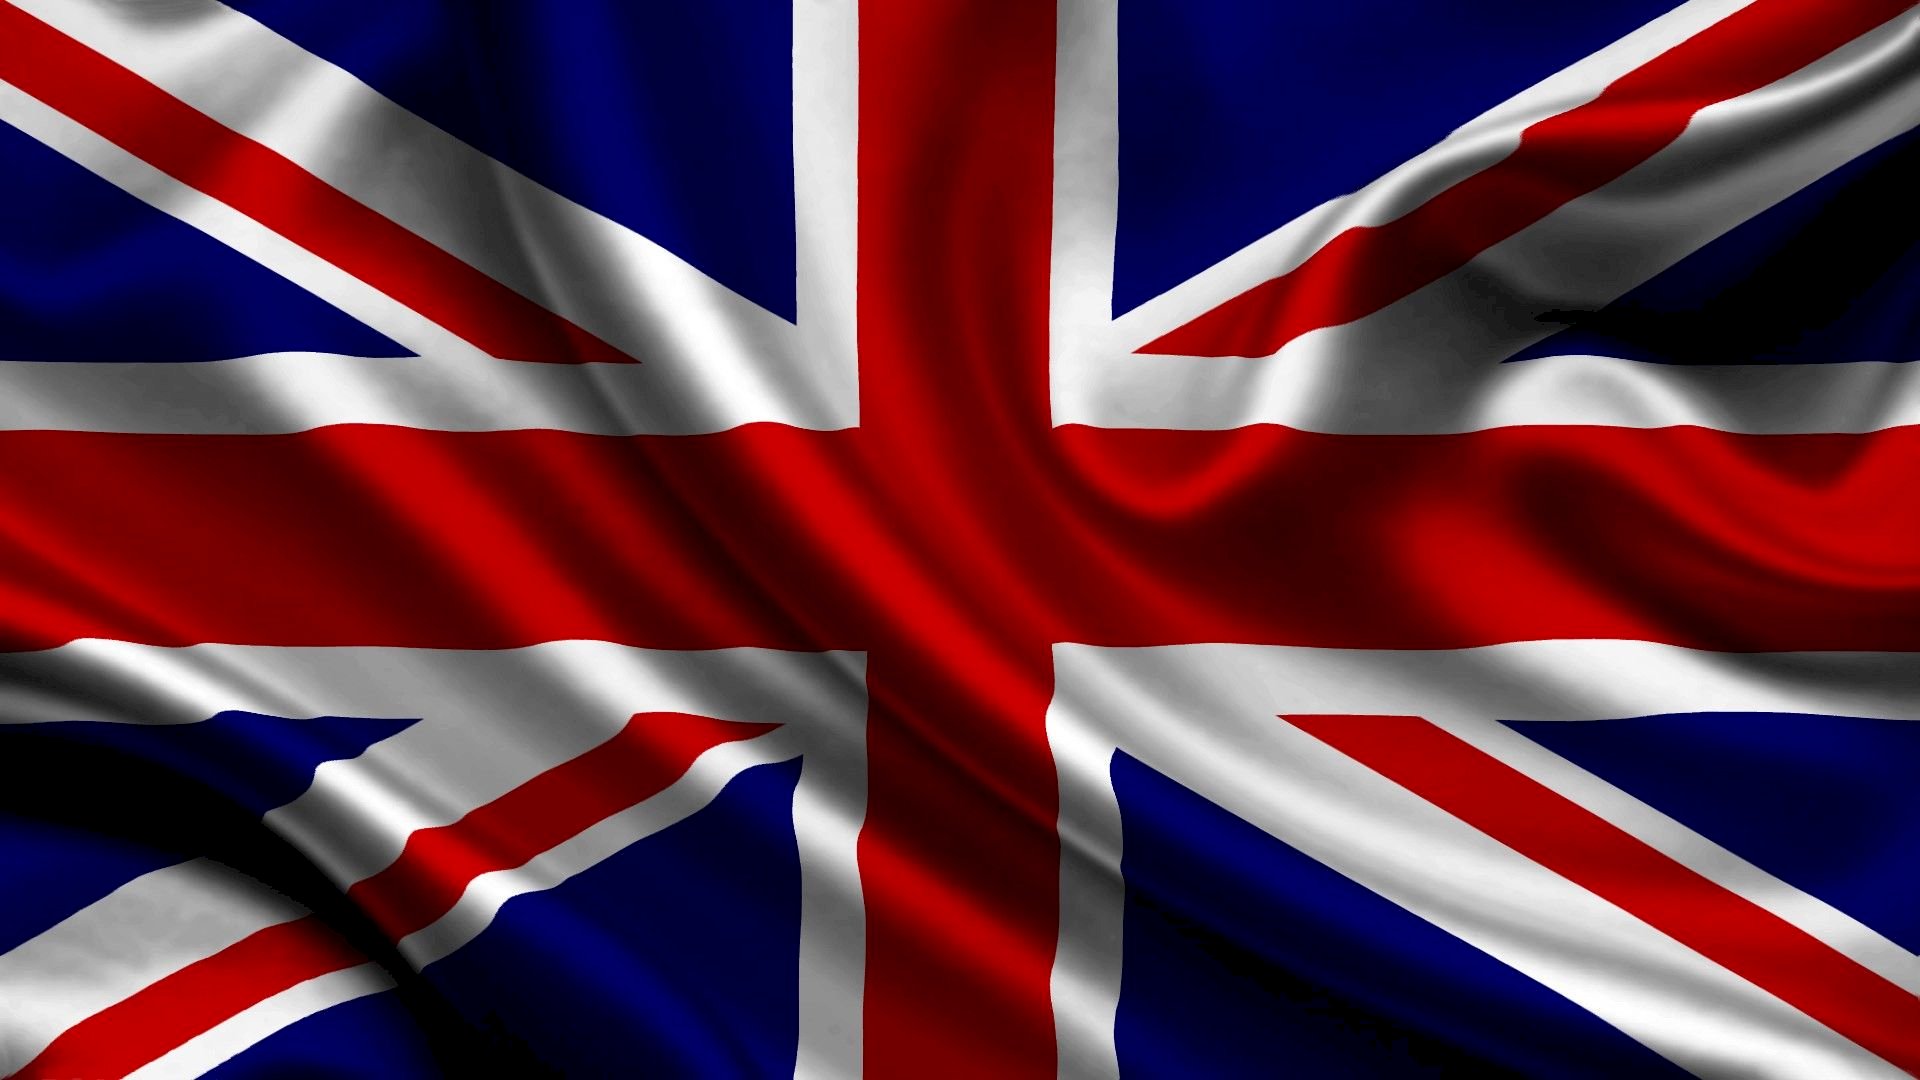 Hình ảnh lá cờ nước Anh: Hình ảnh lá cờ nước Anh là một biểu tượng truyền thống của quốc gia này. Nó đại diện cho sự tự hào và lòng yêu nước của người Anh. Những hình ảnh này không chỉ đẹp mắt mà còn giúp cho người xem tìm hiểu sâu rộng hơn về văn hóa, lịch sử và truyền thống của Anh quốc.